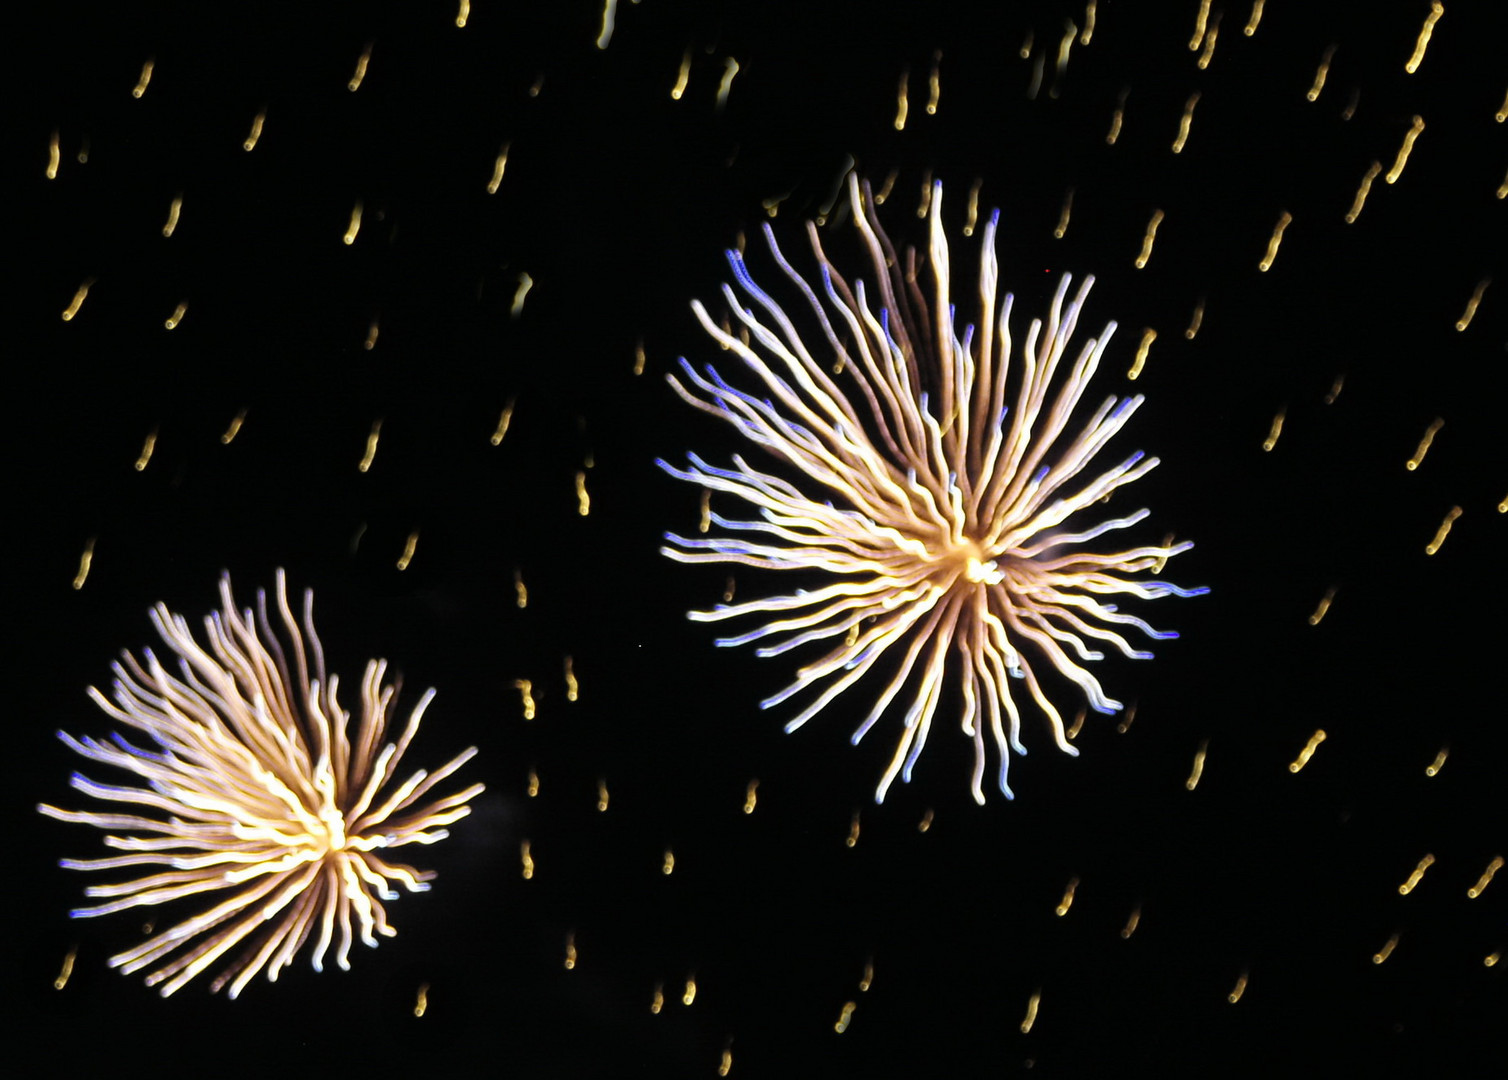 Korallen am Himmel - Feuerwerk zum Jahreswechsel